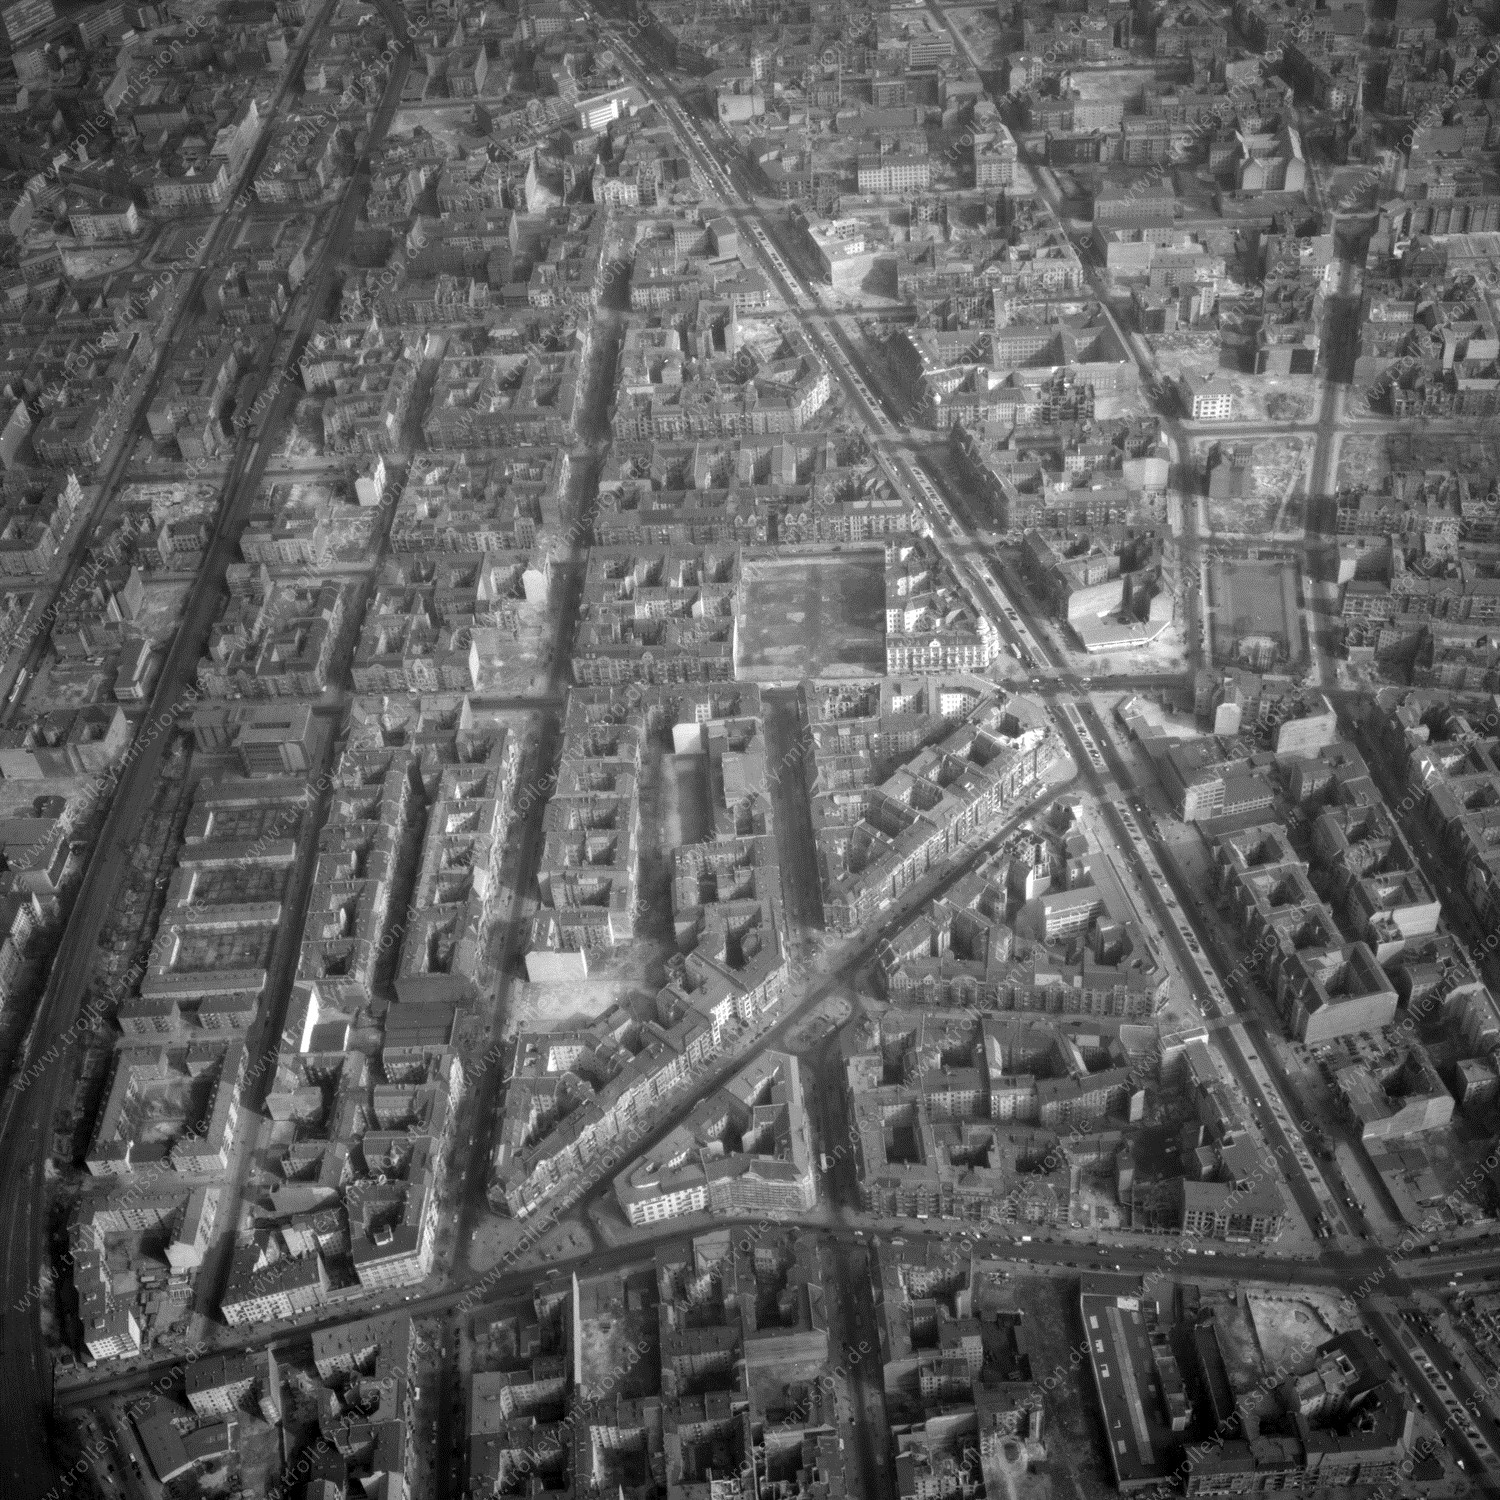 Alte Fotos und Luftbilder von Berlin - Luftbildaufnahme Nr. 13 - Historische Luftaufnahmen von West-Berlin aus dem Jahr 1954 - Flugstrecke Charlie